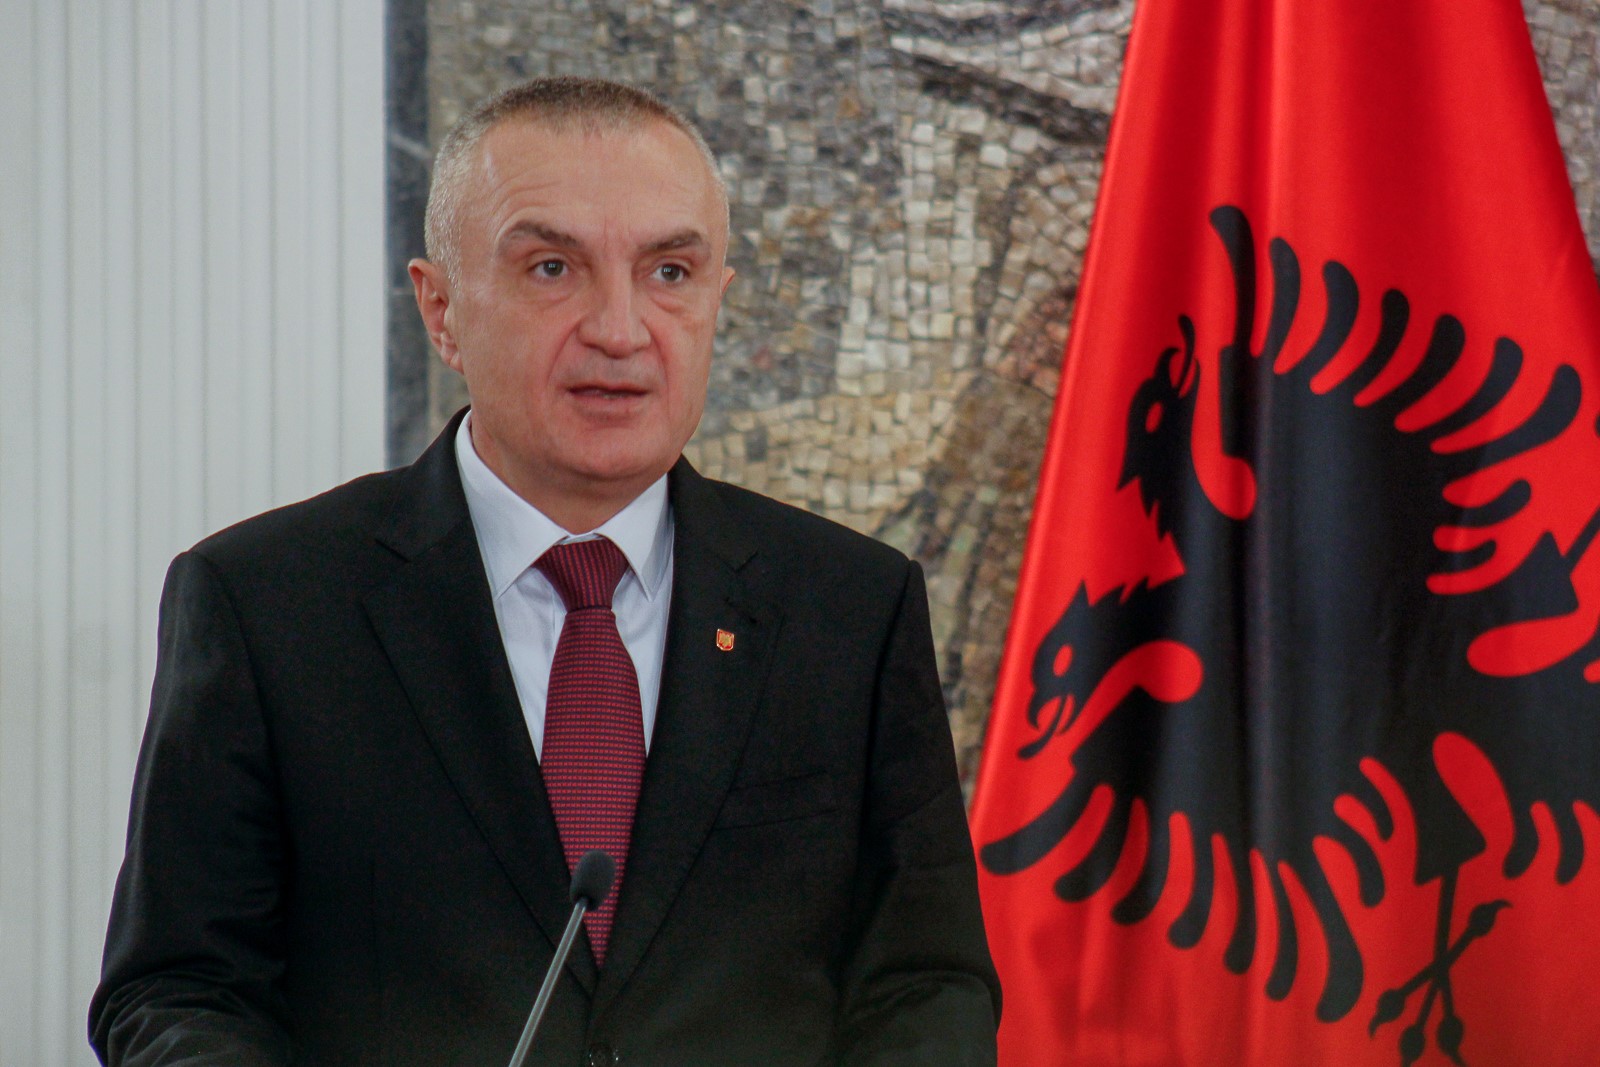 Az albán elnök azt mondta, kész akár önmagával is végezni, ha ez segít megoldani a belpolitikai válságot